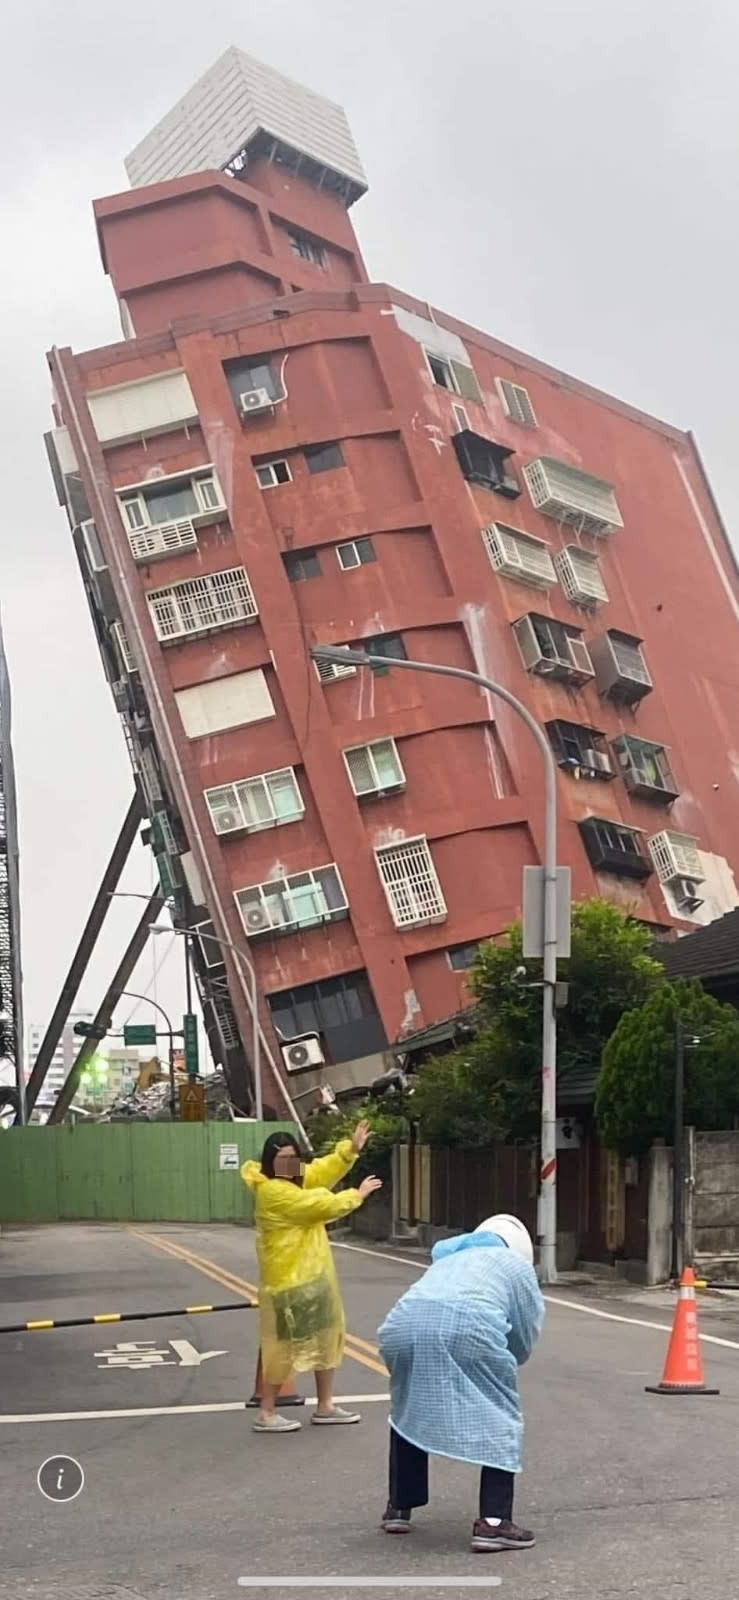 情侶檔在倒塌傾斜的花蓮市天王星大樓前方開心擺拍。取自臉書爆廢1公社